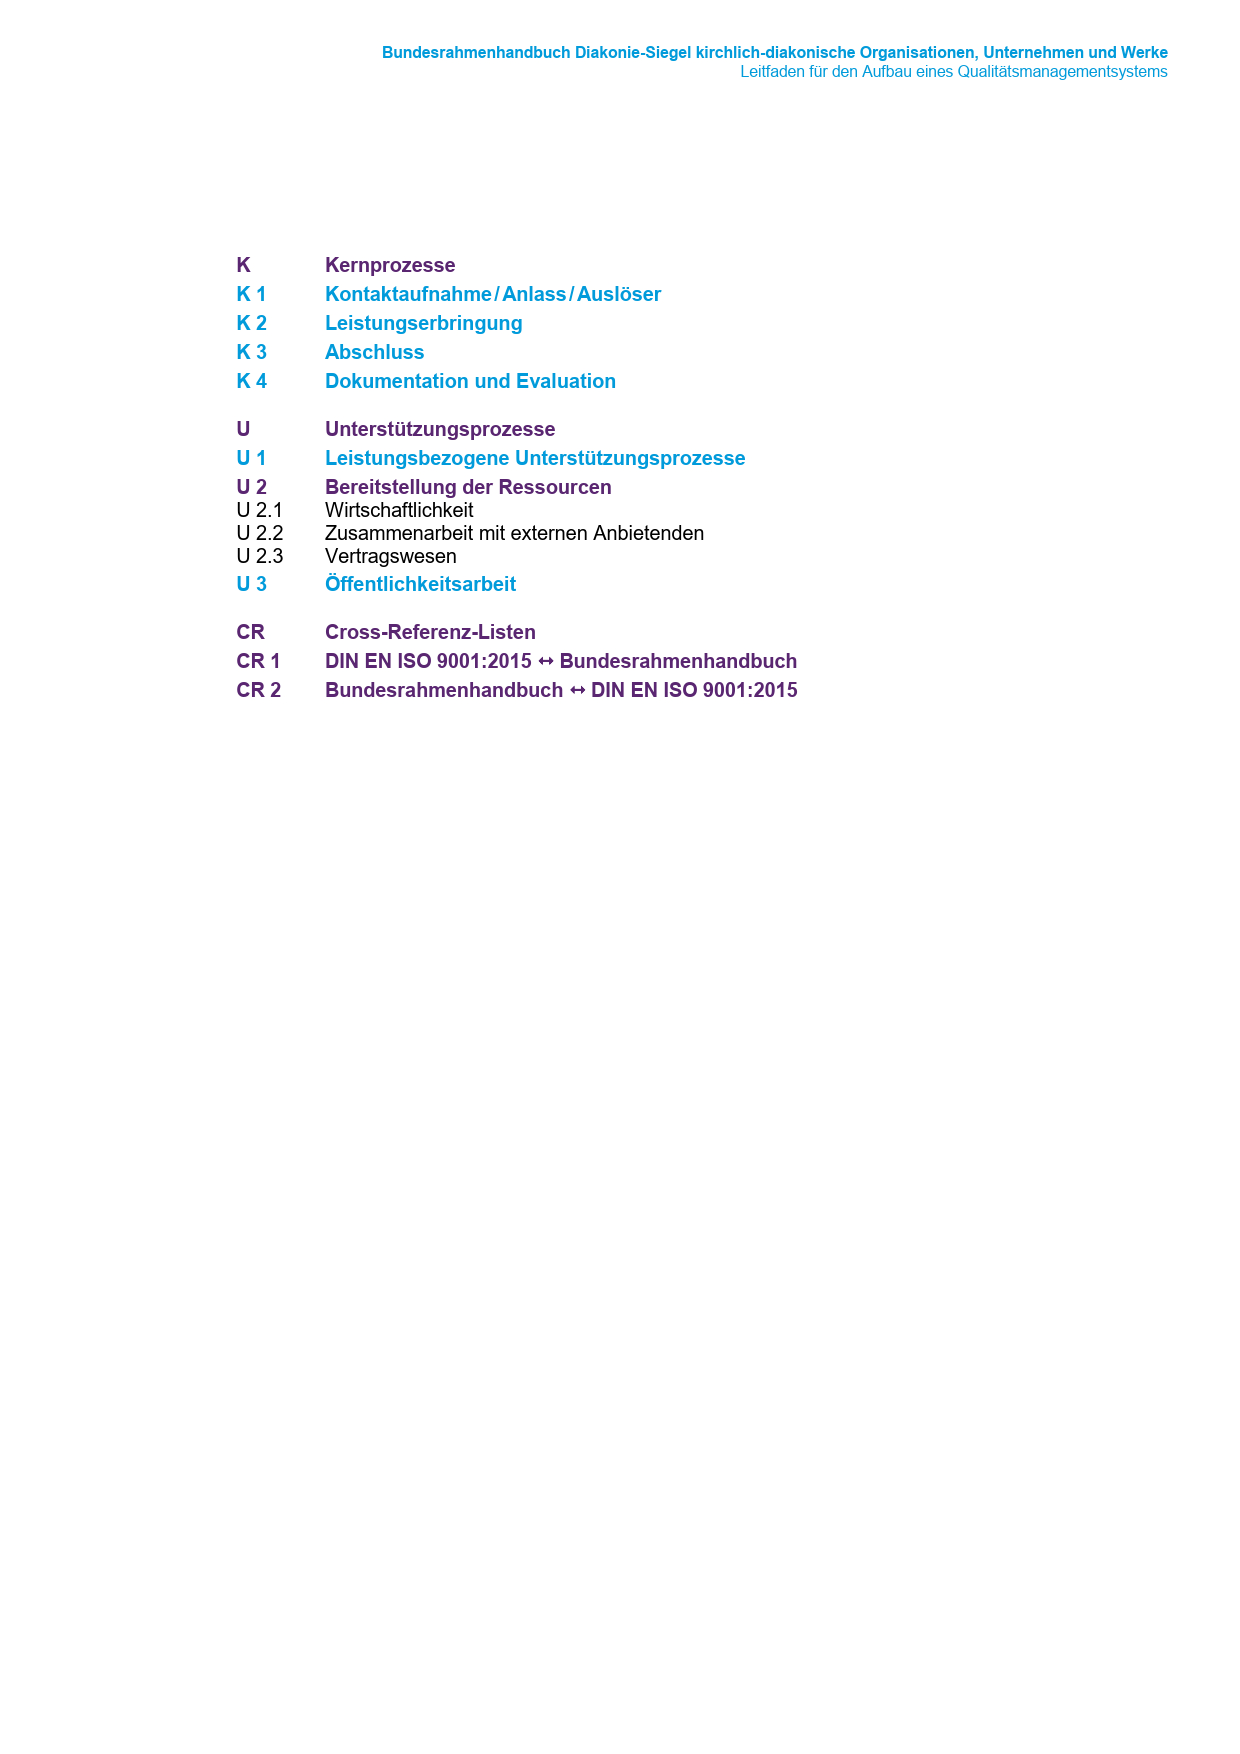 Kirchlich-diakonische Organisationen, Unternehmen und Werke - Bundesrahmenhandbuch Diakonie-Siegel